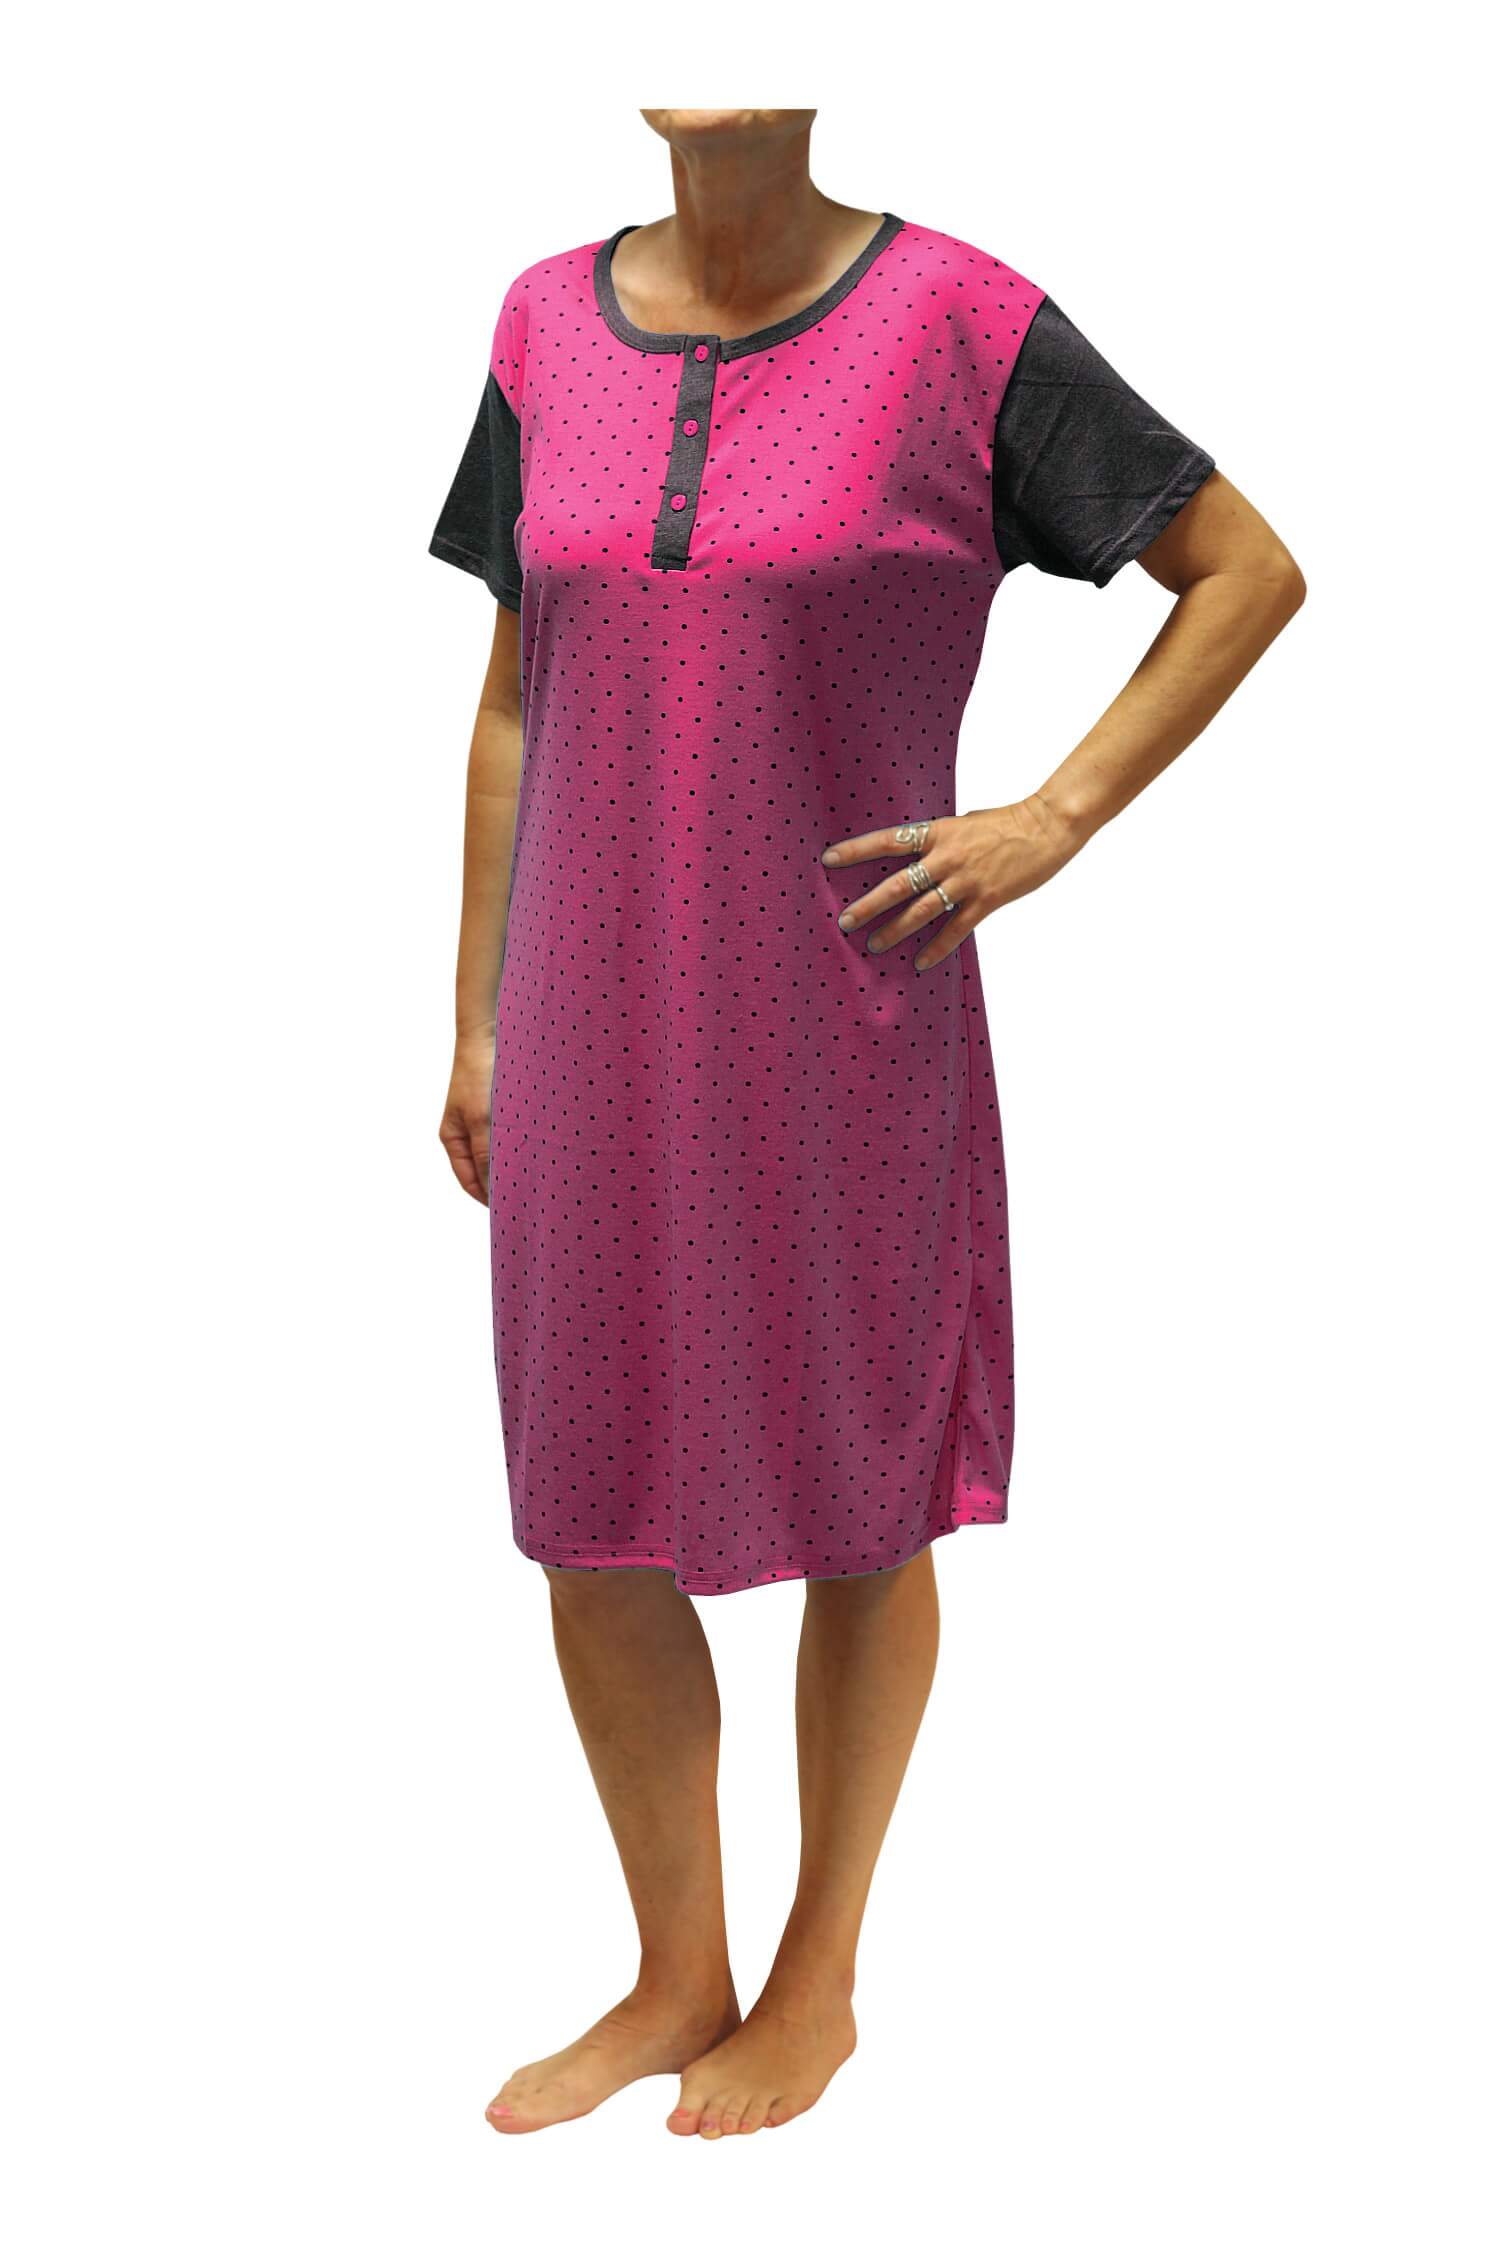 Adéla dámská noční košile s puntíky DNU329-NT XXL růžová